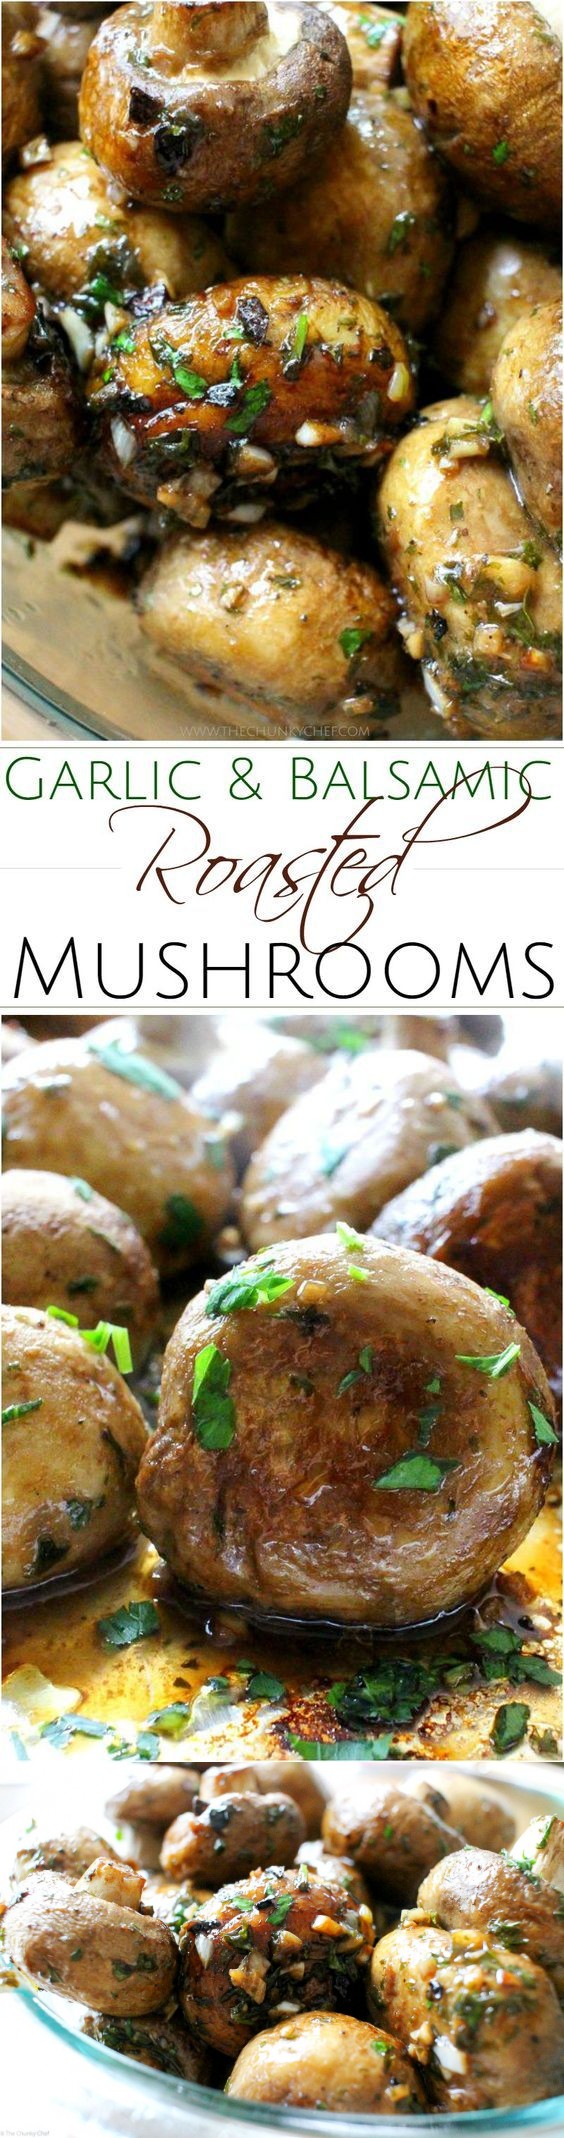 Garlic and Balsamic Roasted Mushrooms